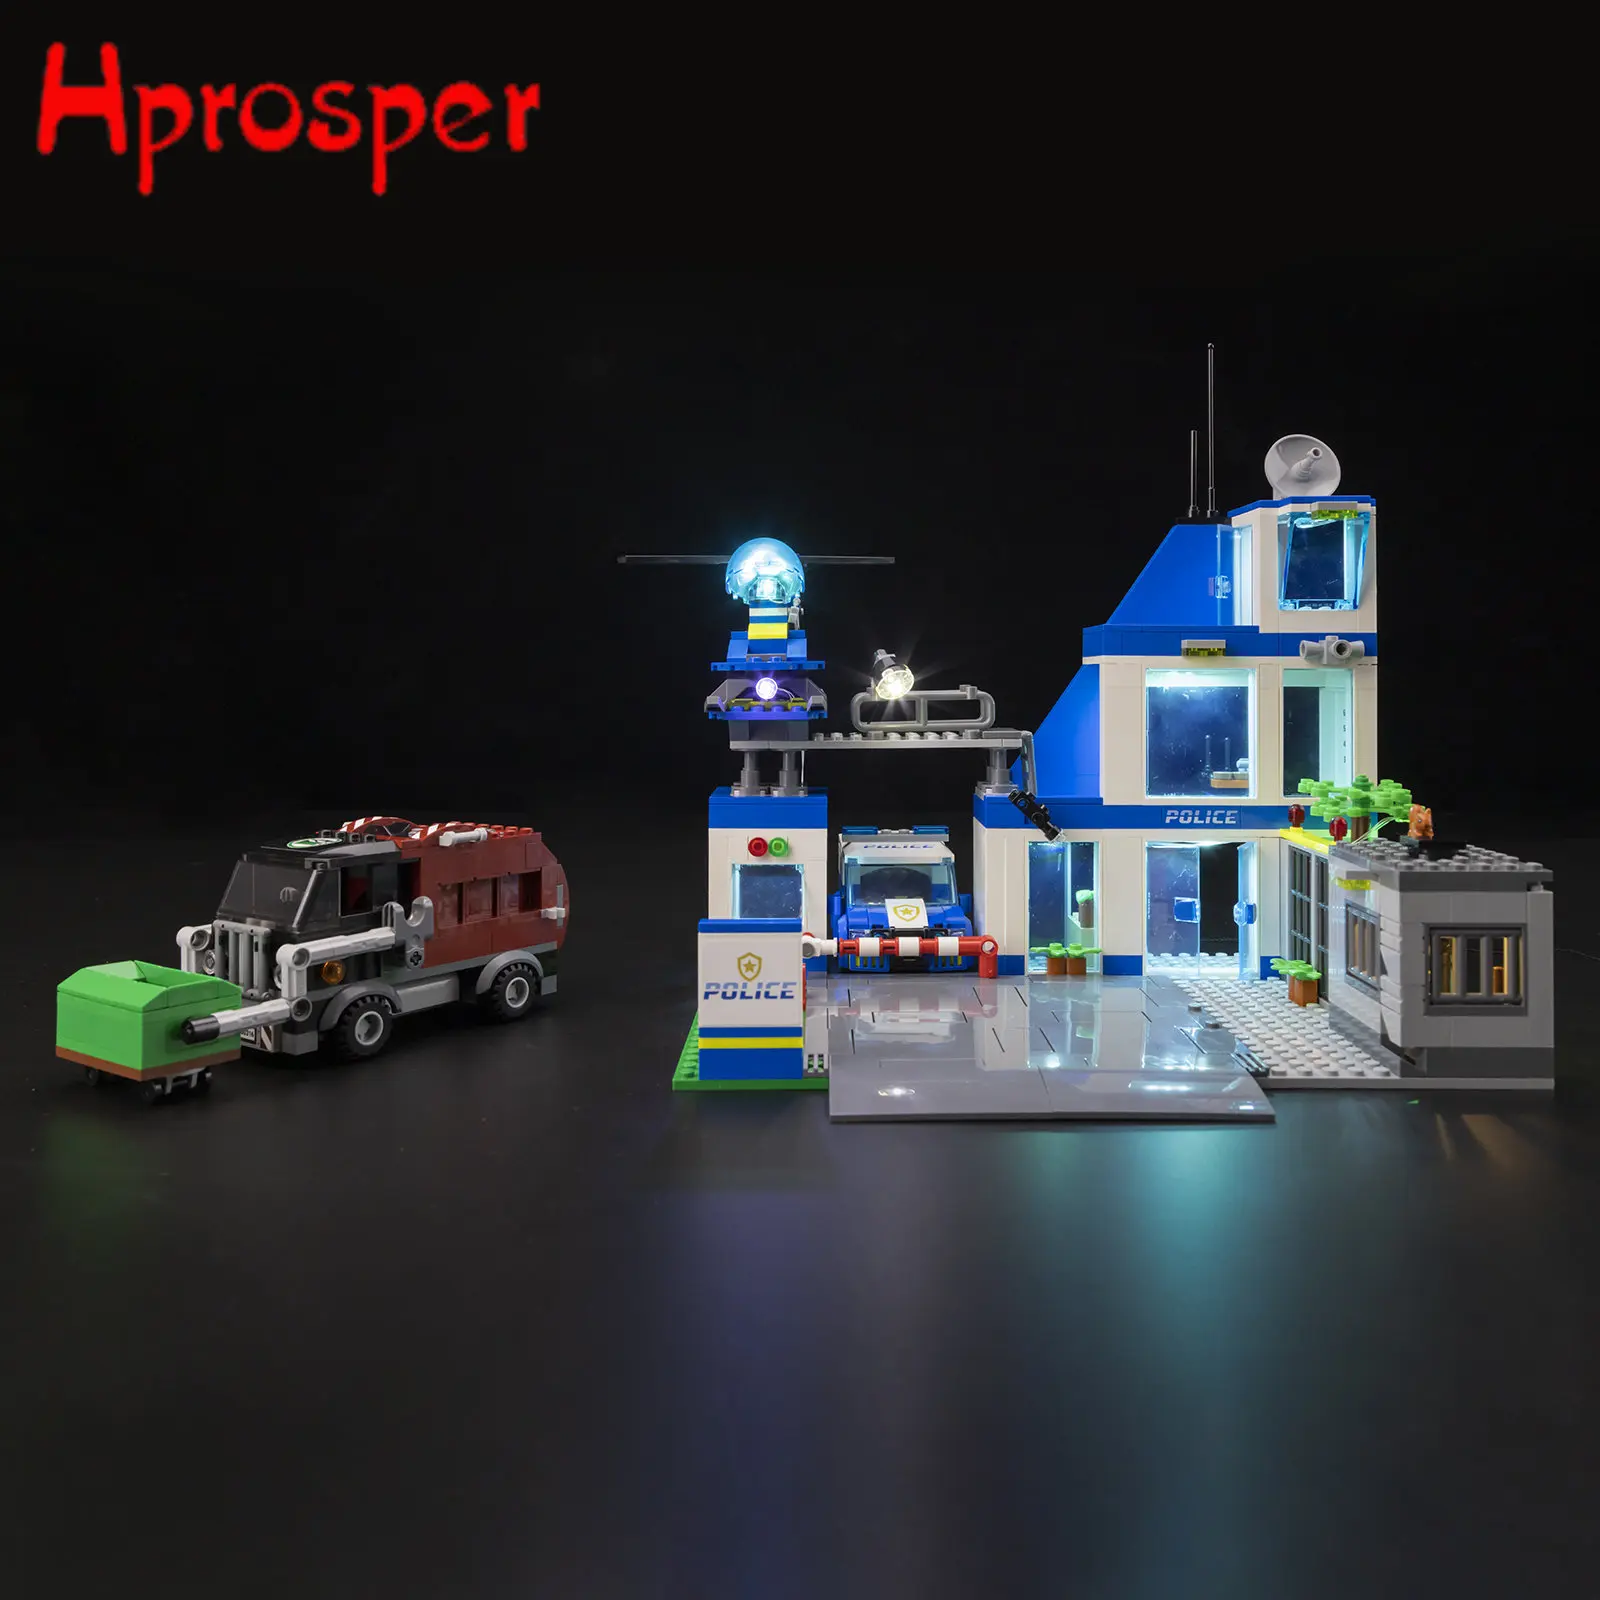 

Hprosper LED Light For 60316 Police Station Building Blocks Lighting Toys Only Lamp+Battery Box(Not Include the Model)